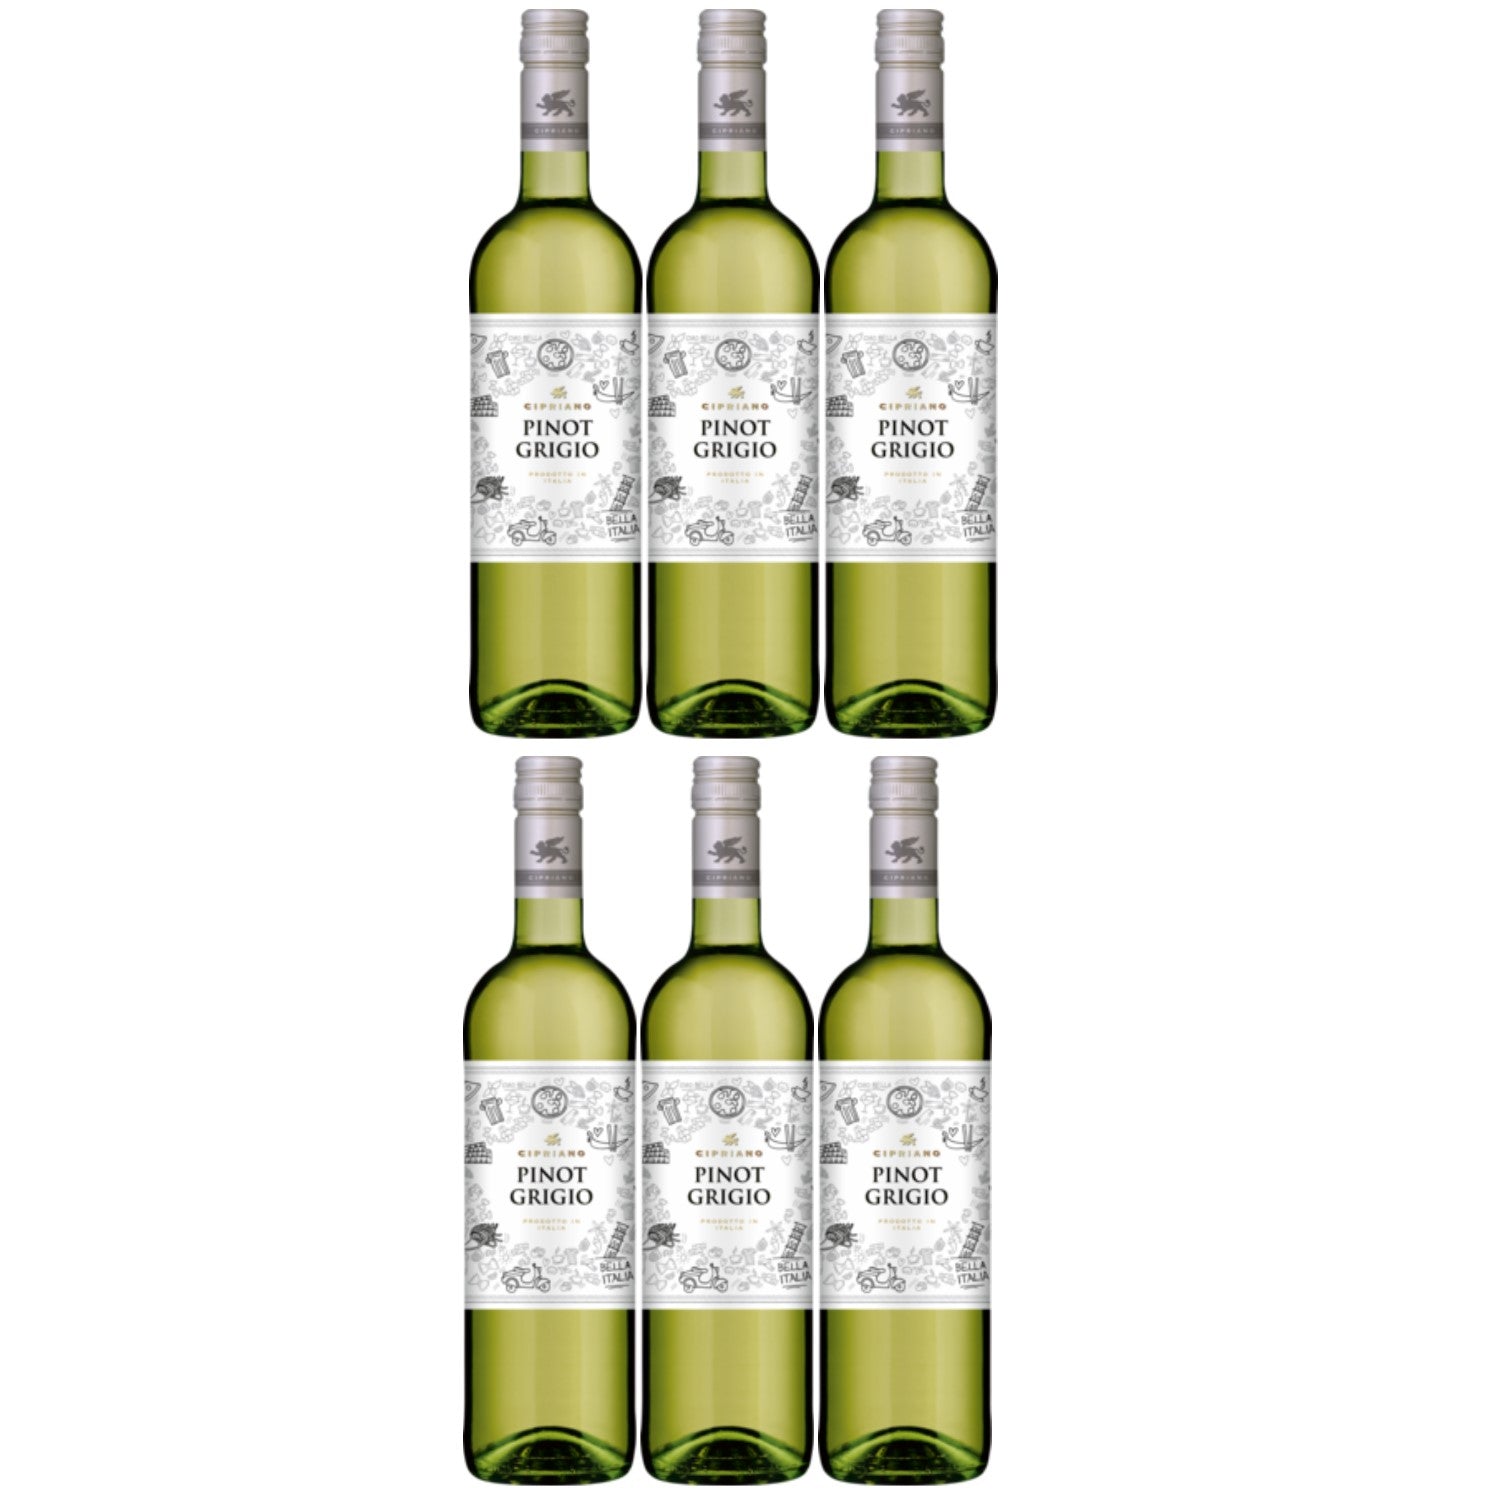 Cipriano Pinot Grigio Venezie Weißwein italienischer Wein trocken DOC Italien (6 x 1.0l) - Versanel -